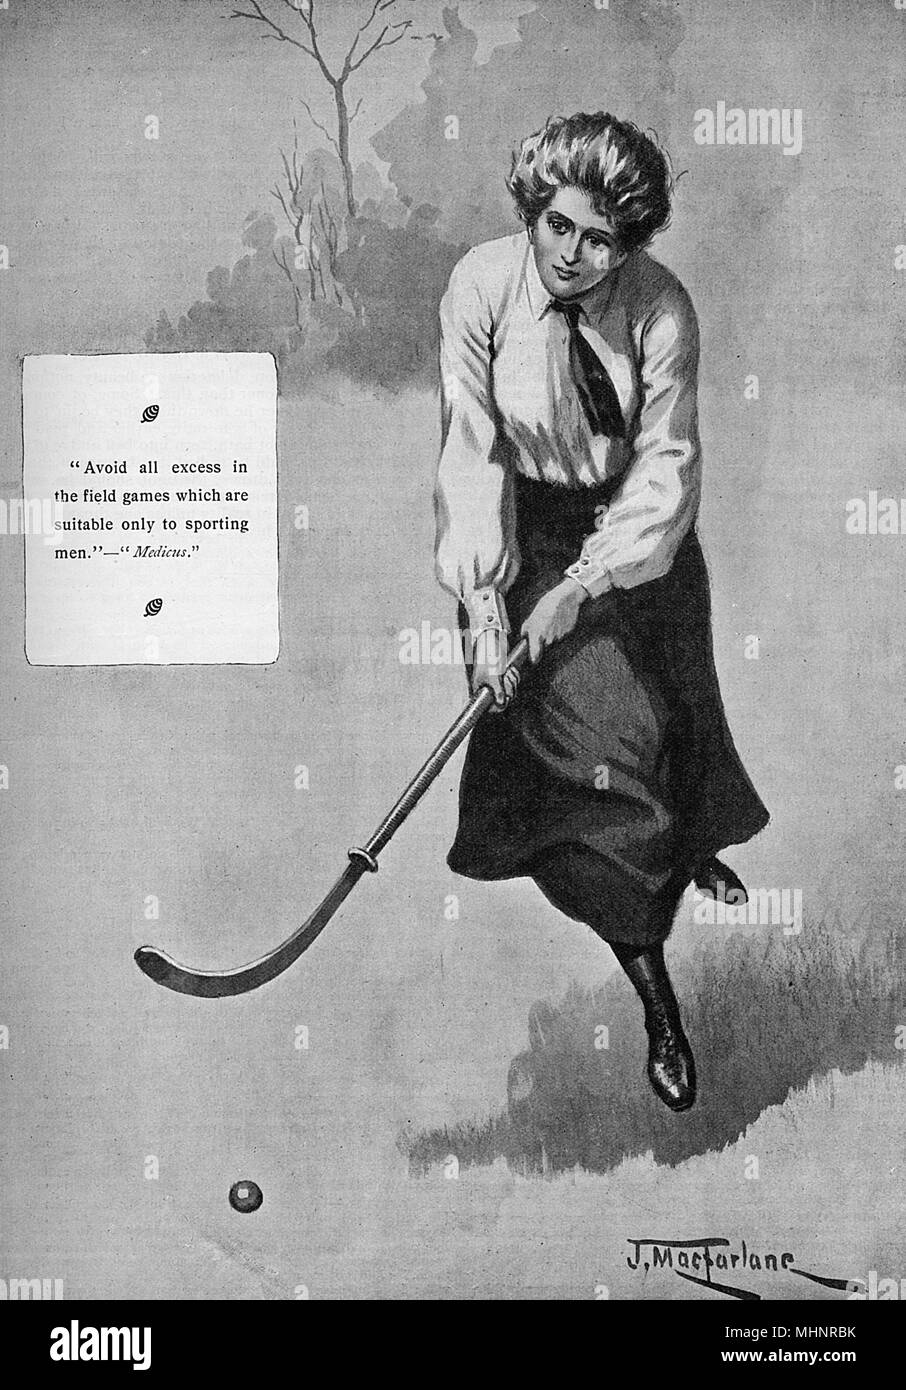 Eine weibliche Hockeyspieler aus der Edwardianischen Zeit, klar gegen die Ratschläge von Medicus (Insert), dass Frauen sollten", alle überschüssigen im Bereich Spiele, die nur für sportliche Männer geeignet sind, vermeiden." Datum: 1908 Stockfoto